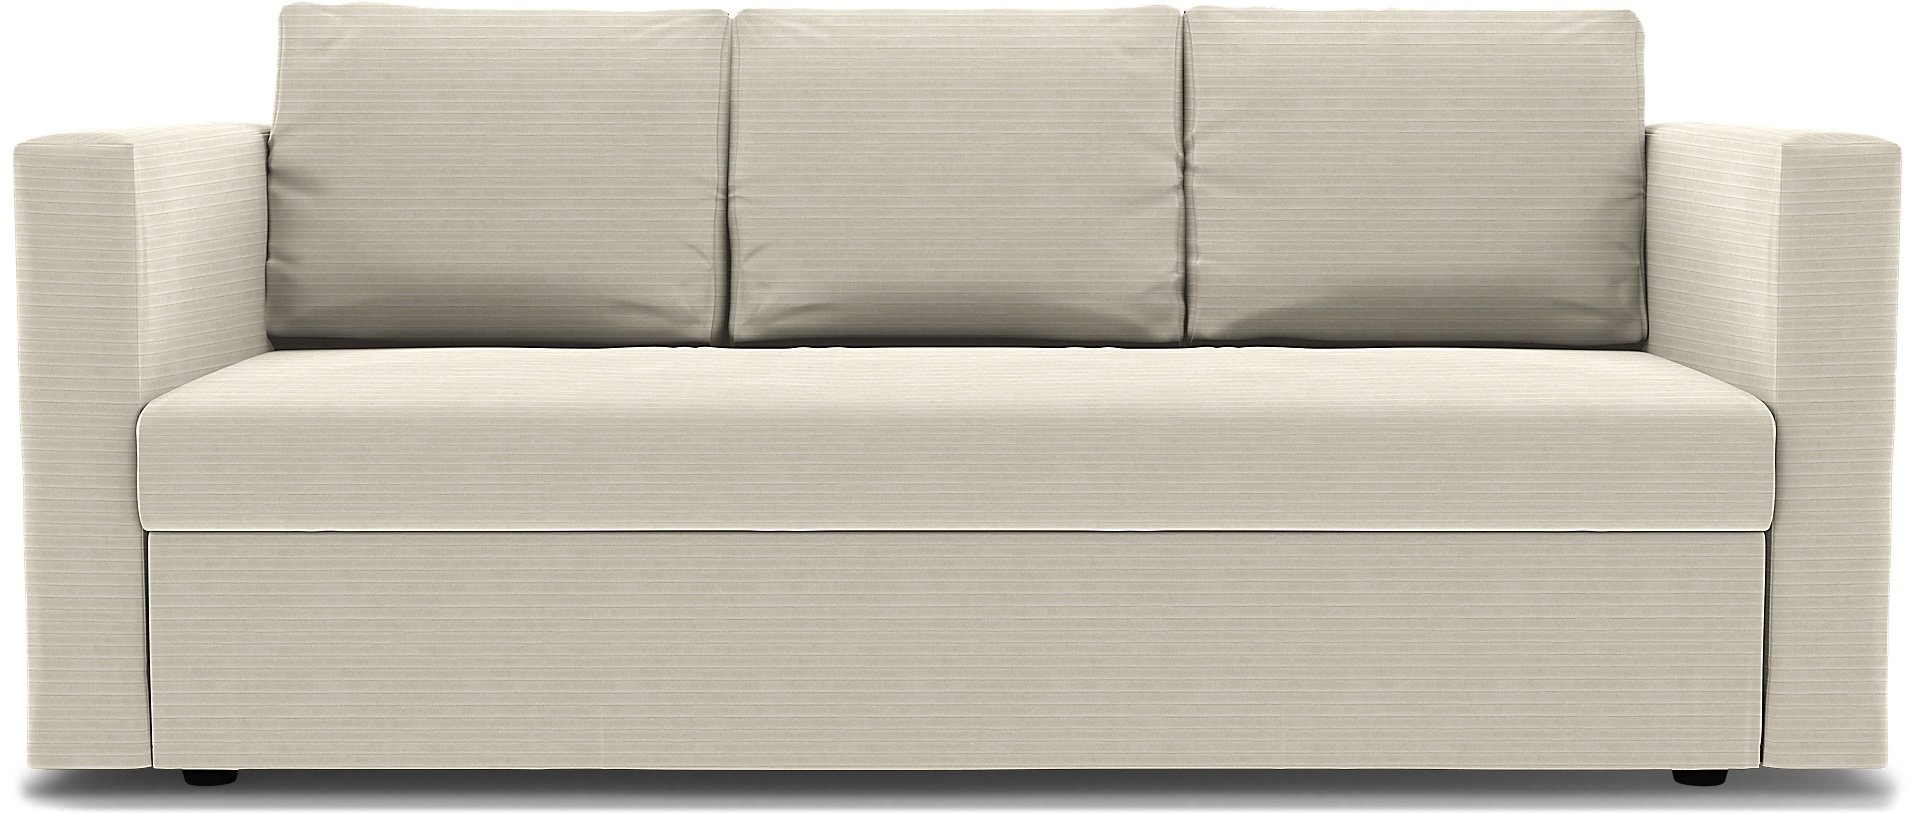 IKEA - Friheten 3 Seater Sofa Bed Cover, Tofu, Corduroy - Bemz